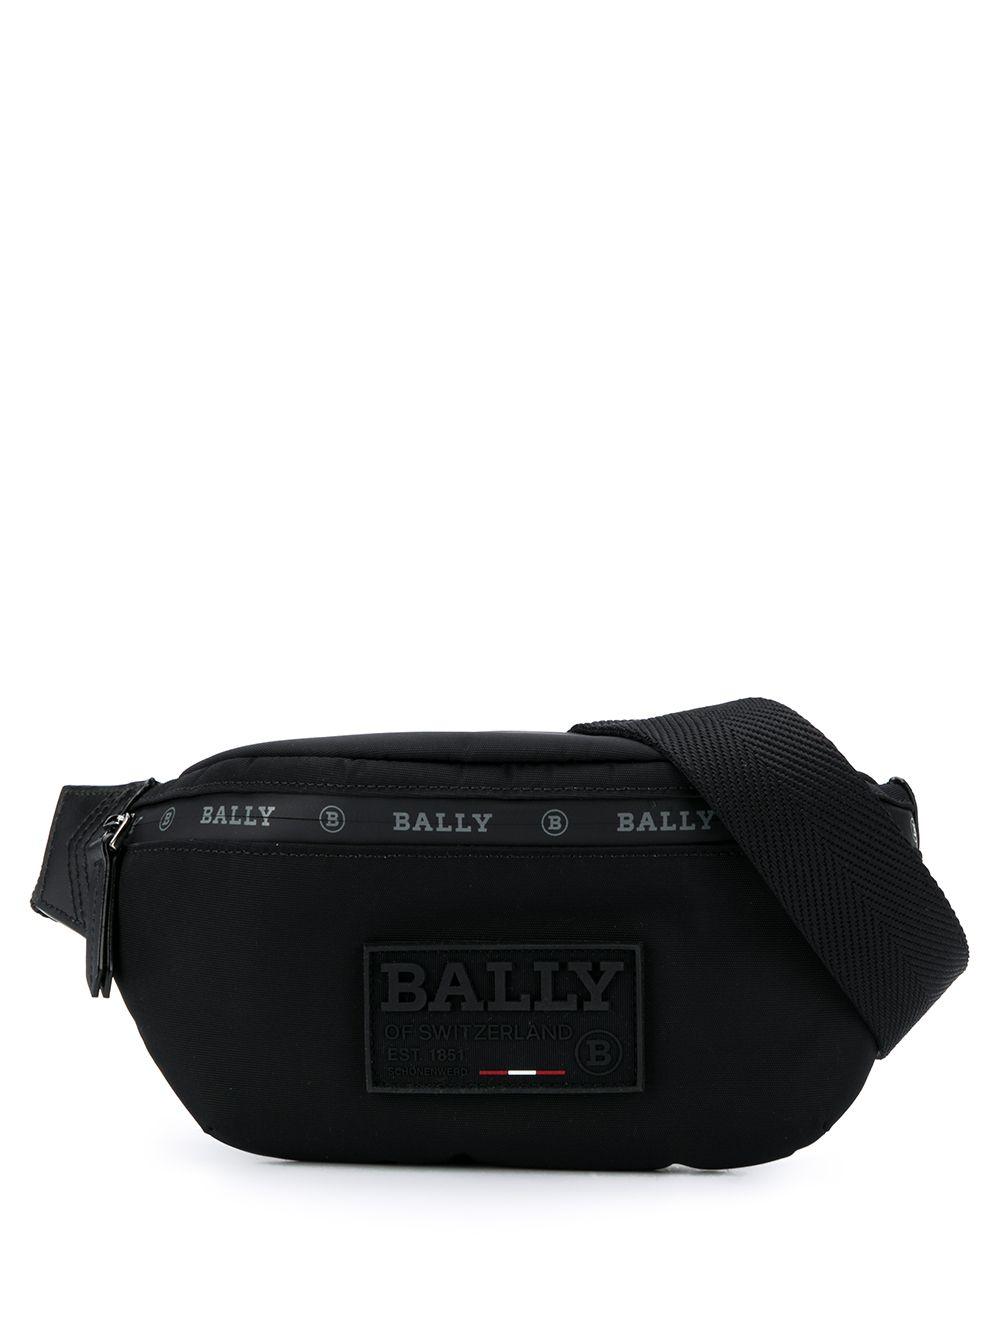 Bally Logo Print Belt Bag in Black for Men - Lyst